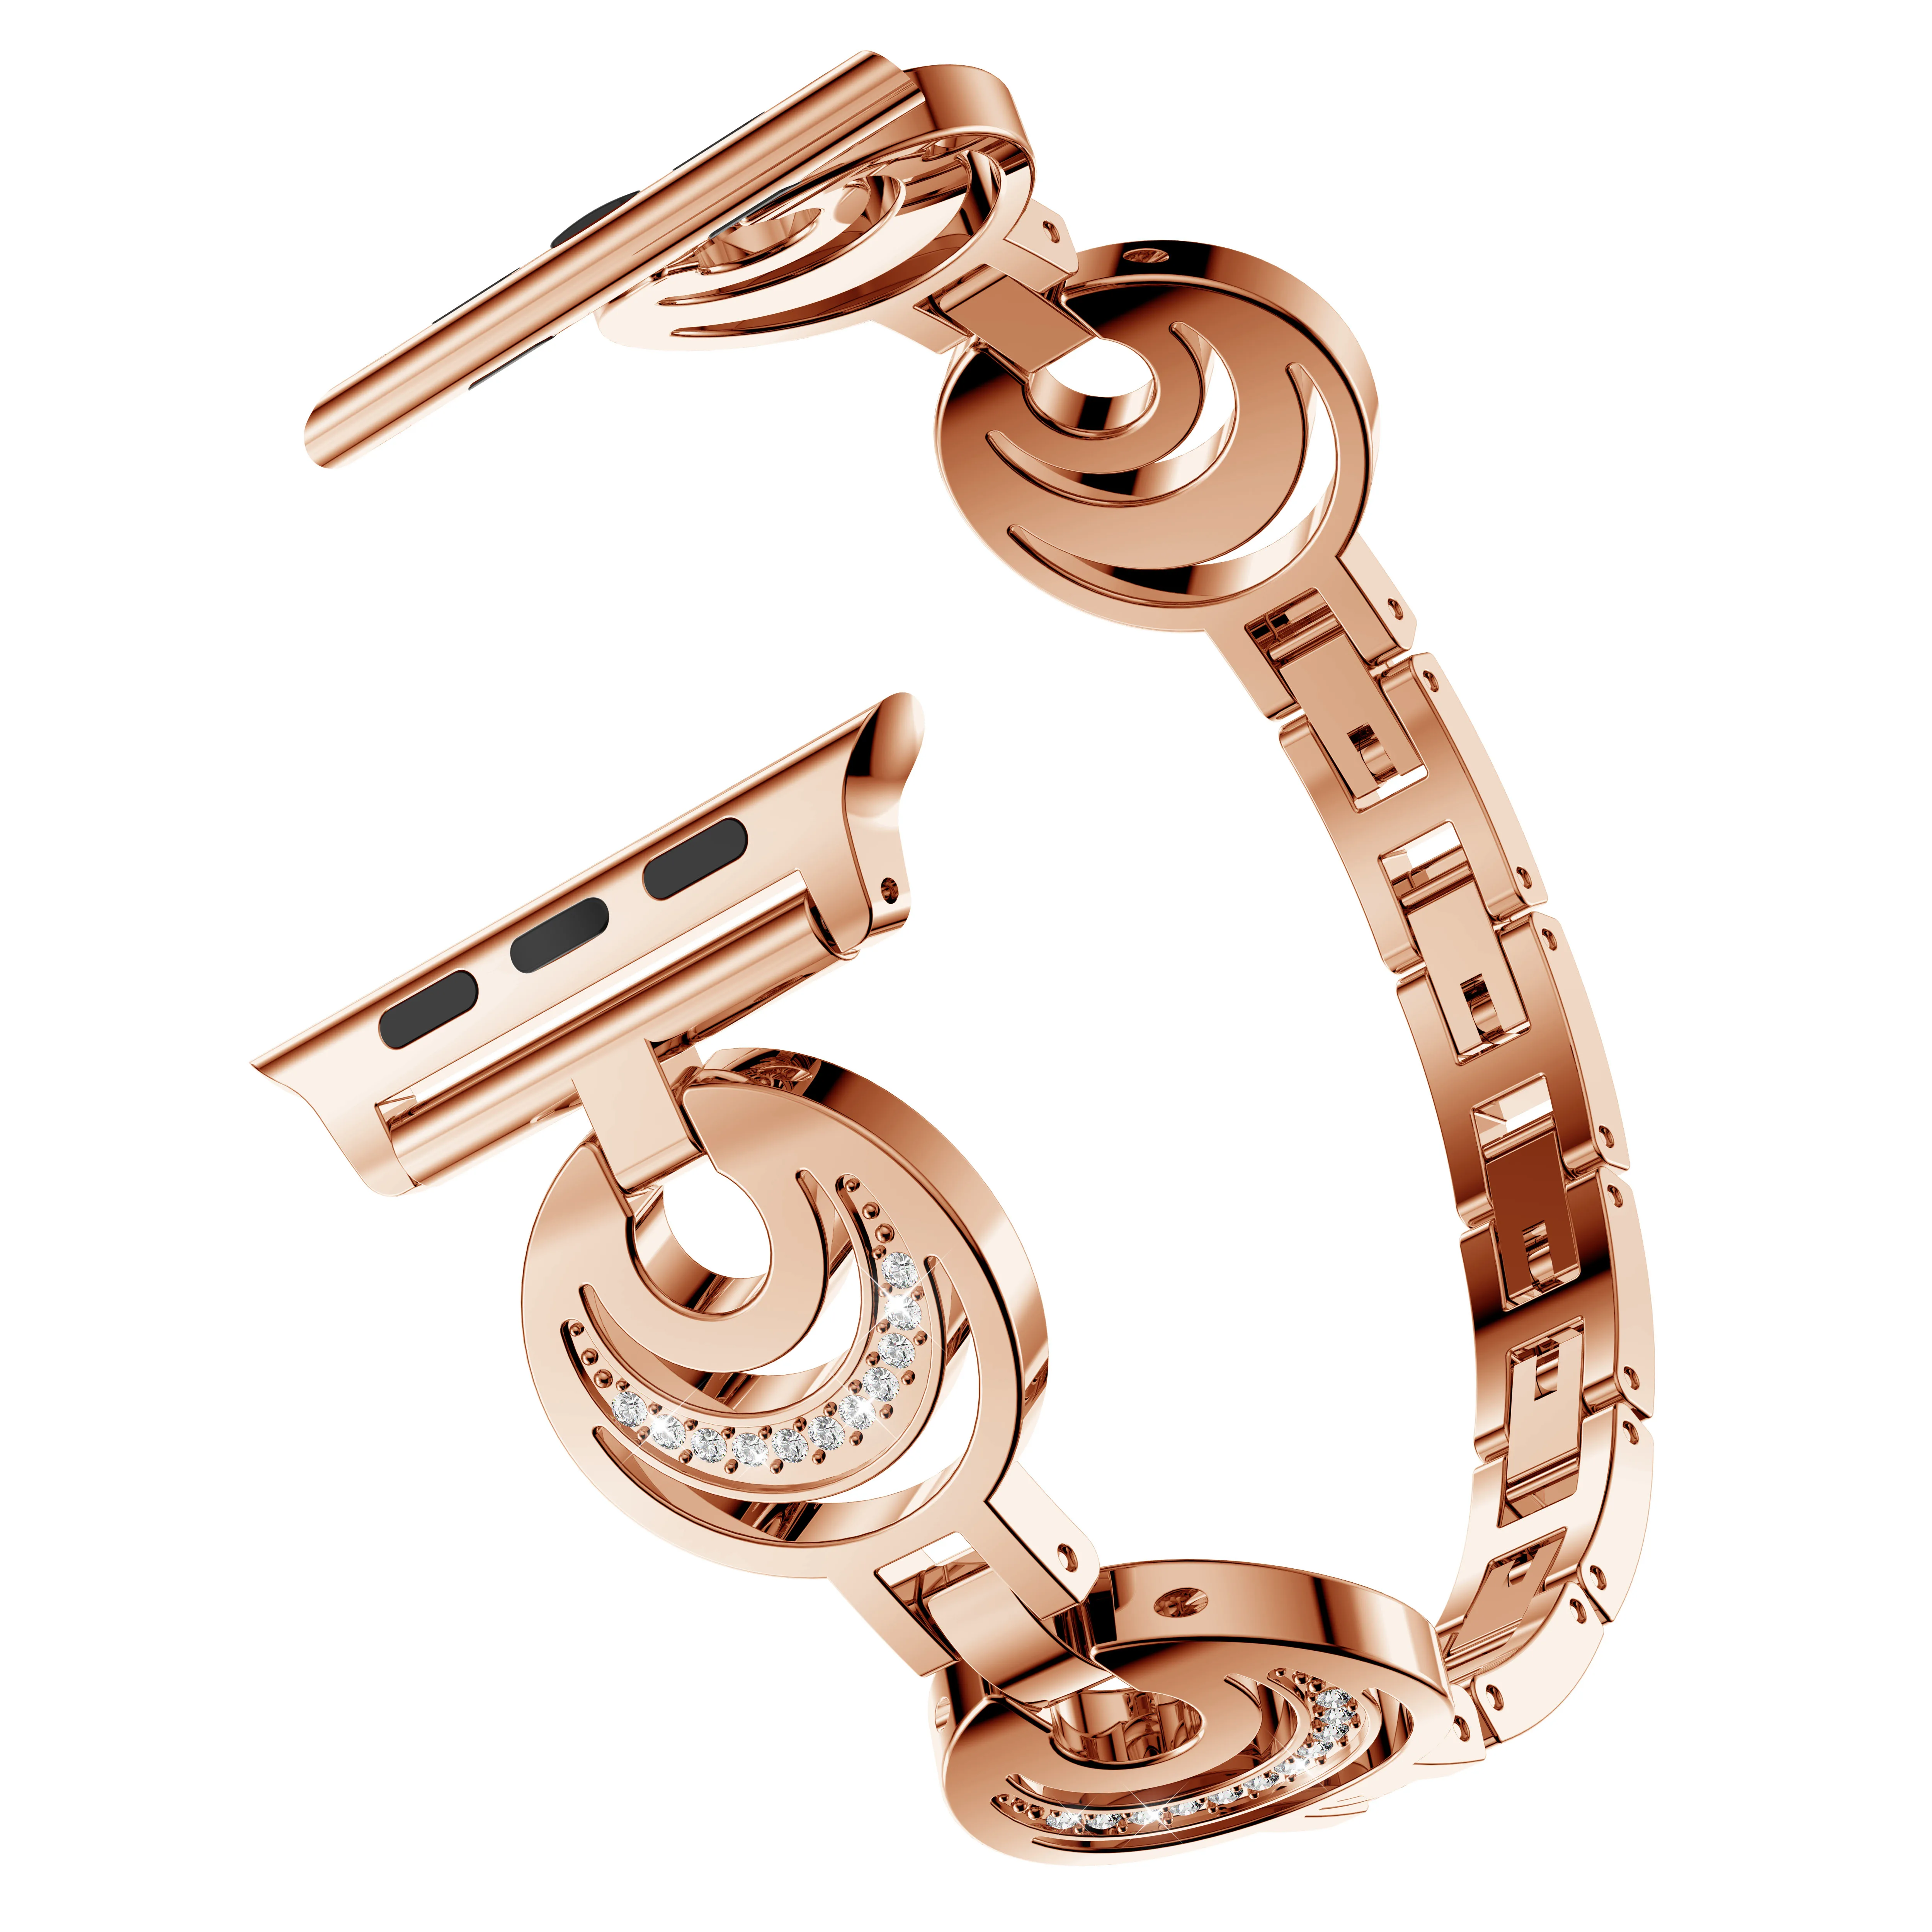 Bling алмаз луна Для женщин часы браслет для Apple Watch группа 42 мм 38 мм Нержавеющая сталь металлический ремешок для iWatch серии 3 2 1